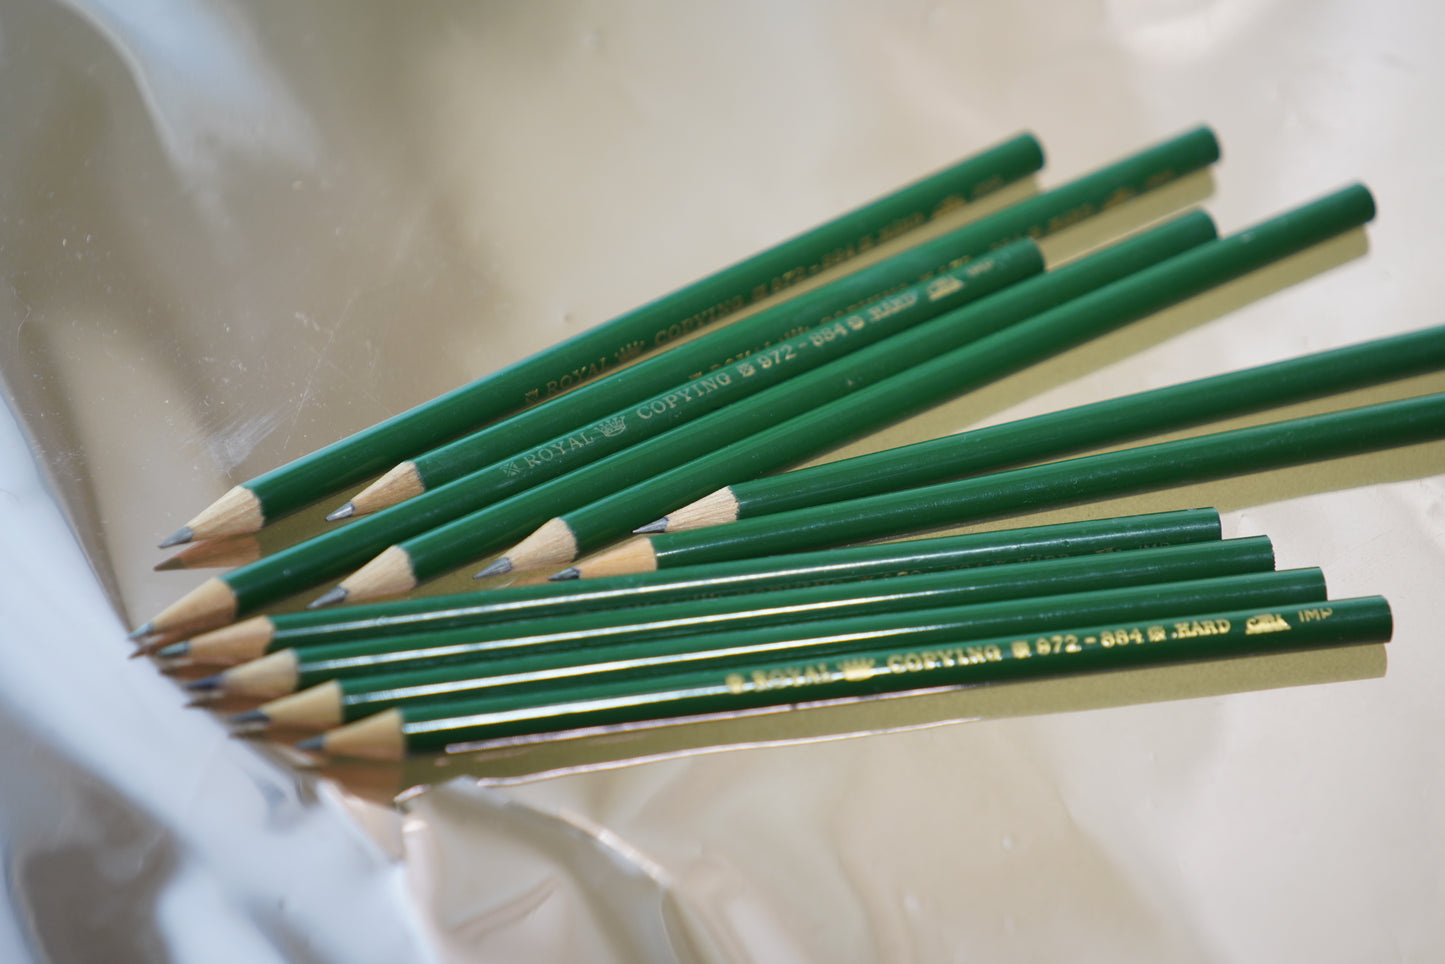 Green pencils